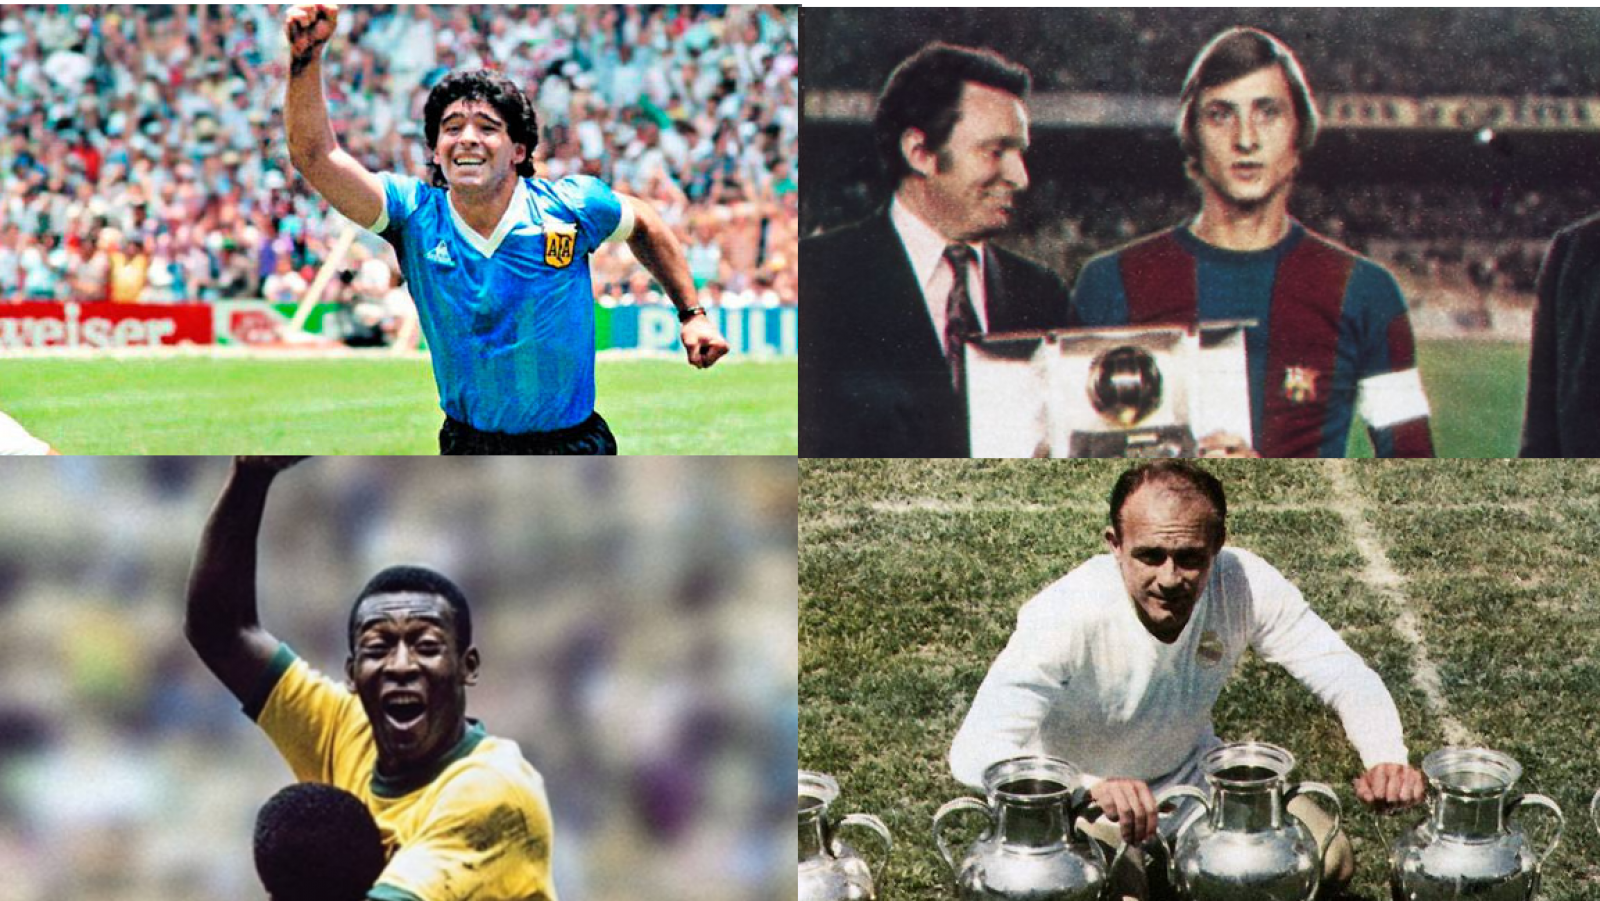 ¿Quién es el mejor futbolista de la historia? Maradona, Cruyff, Pelé o Di Stéfano